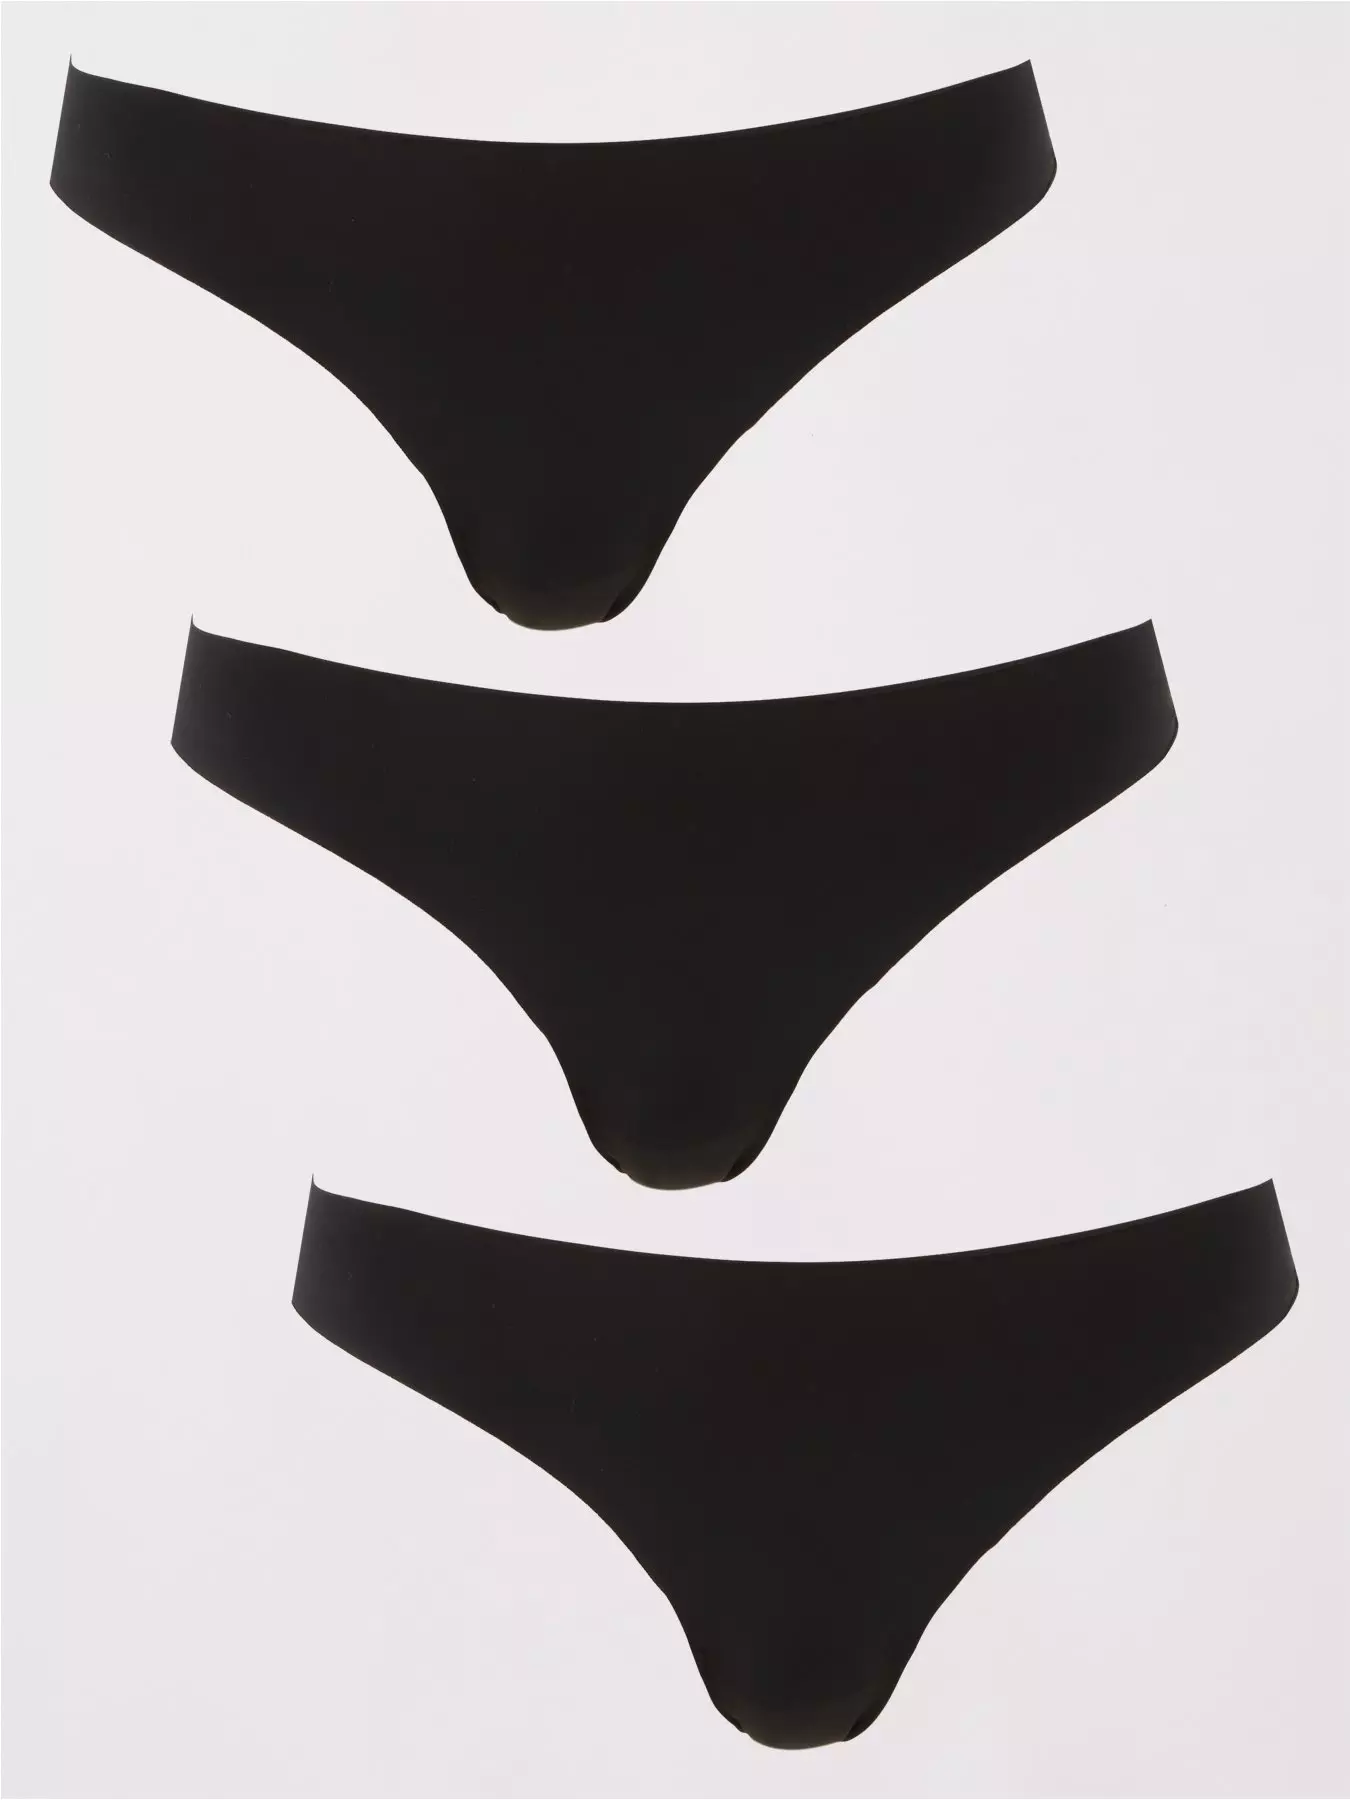 Dorina Flo knit lingerie set 3 pack in black, khaki and white